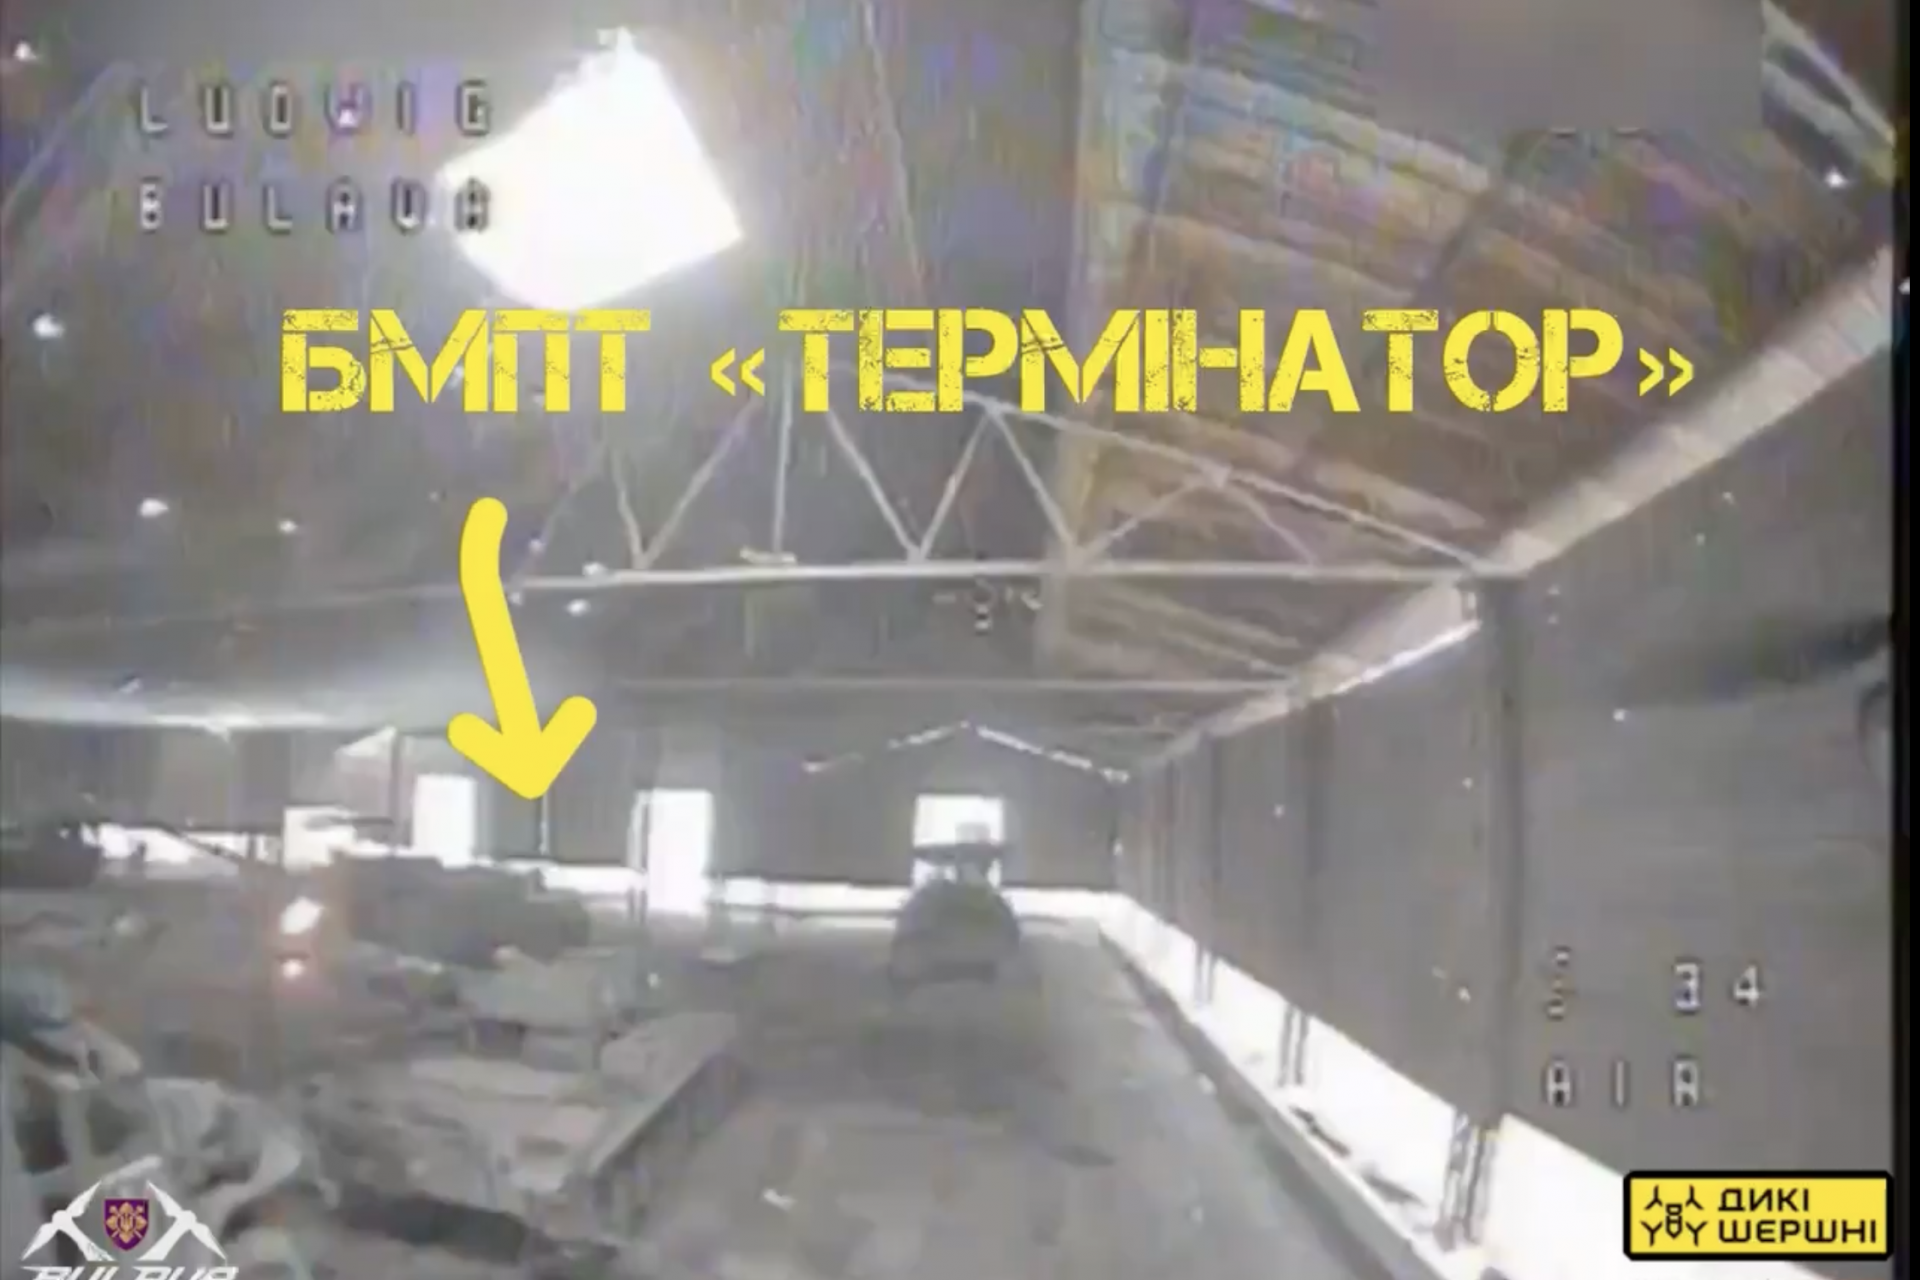 Eén BMPT Terminator werd aangevallen en geraakt door een drone